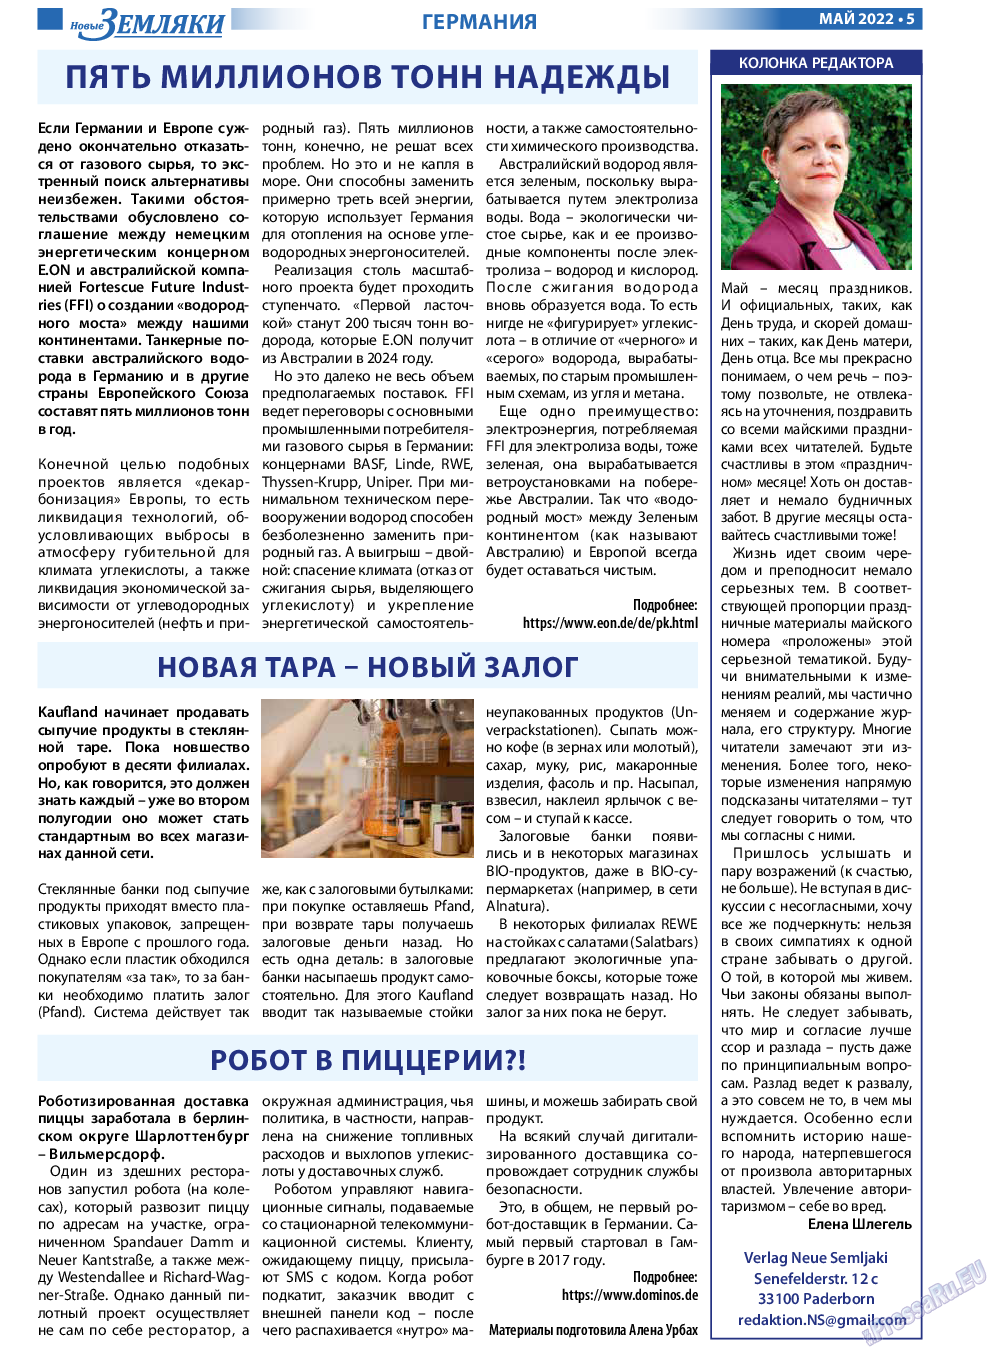 Новые Земляки, газета. 2022 №5 стр.5